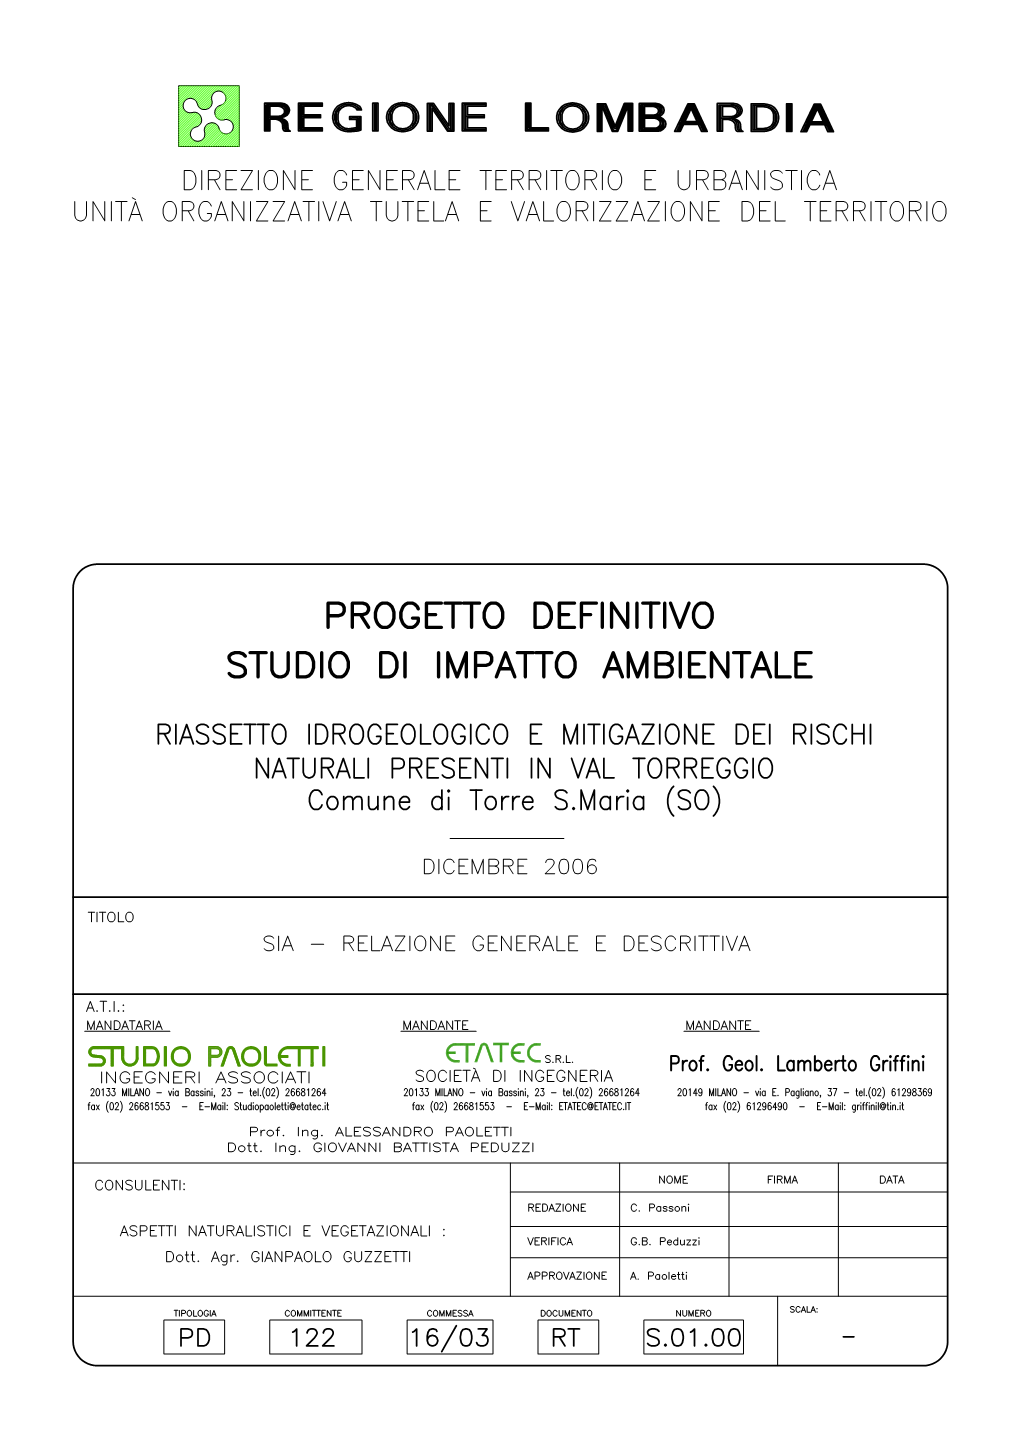 Riassetto Idrogeologico E Mitigazione Dei Rischi Naturali Presenti in Val Torreggio – Comune Di Torre S.Maria (SO) S.01.00 – STUDIO D’IMPATTO AMBIENTALE - Relazione